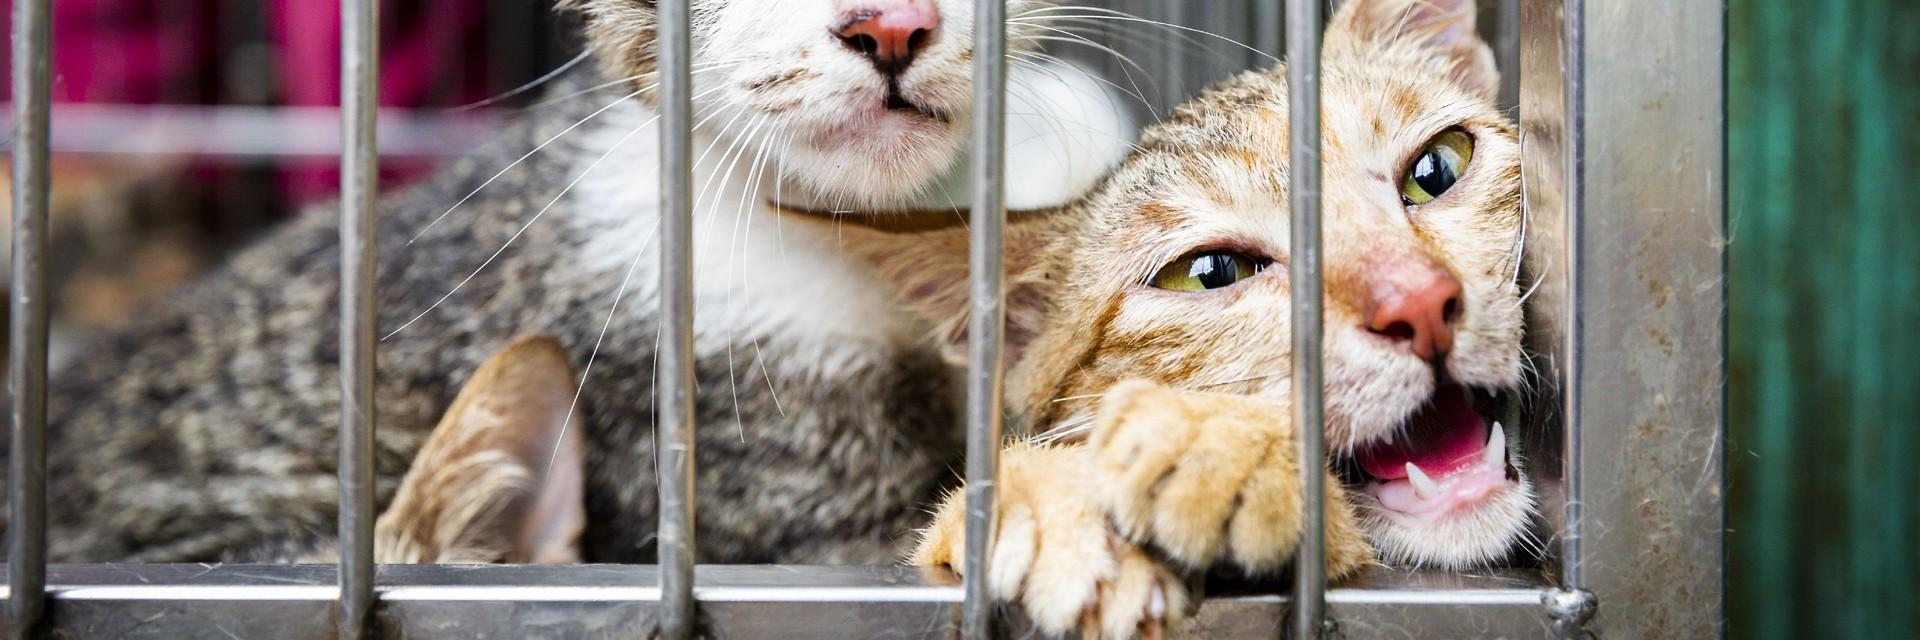  Deux chats dans une cage